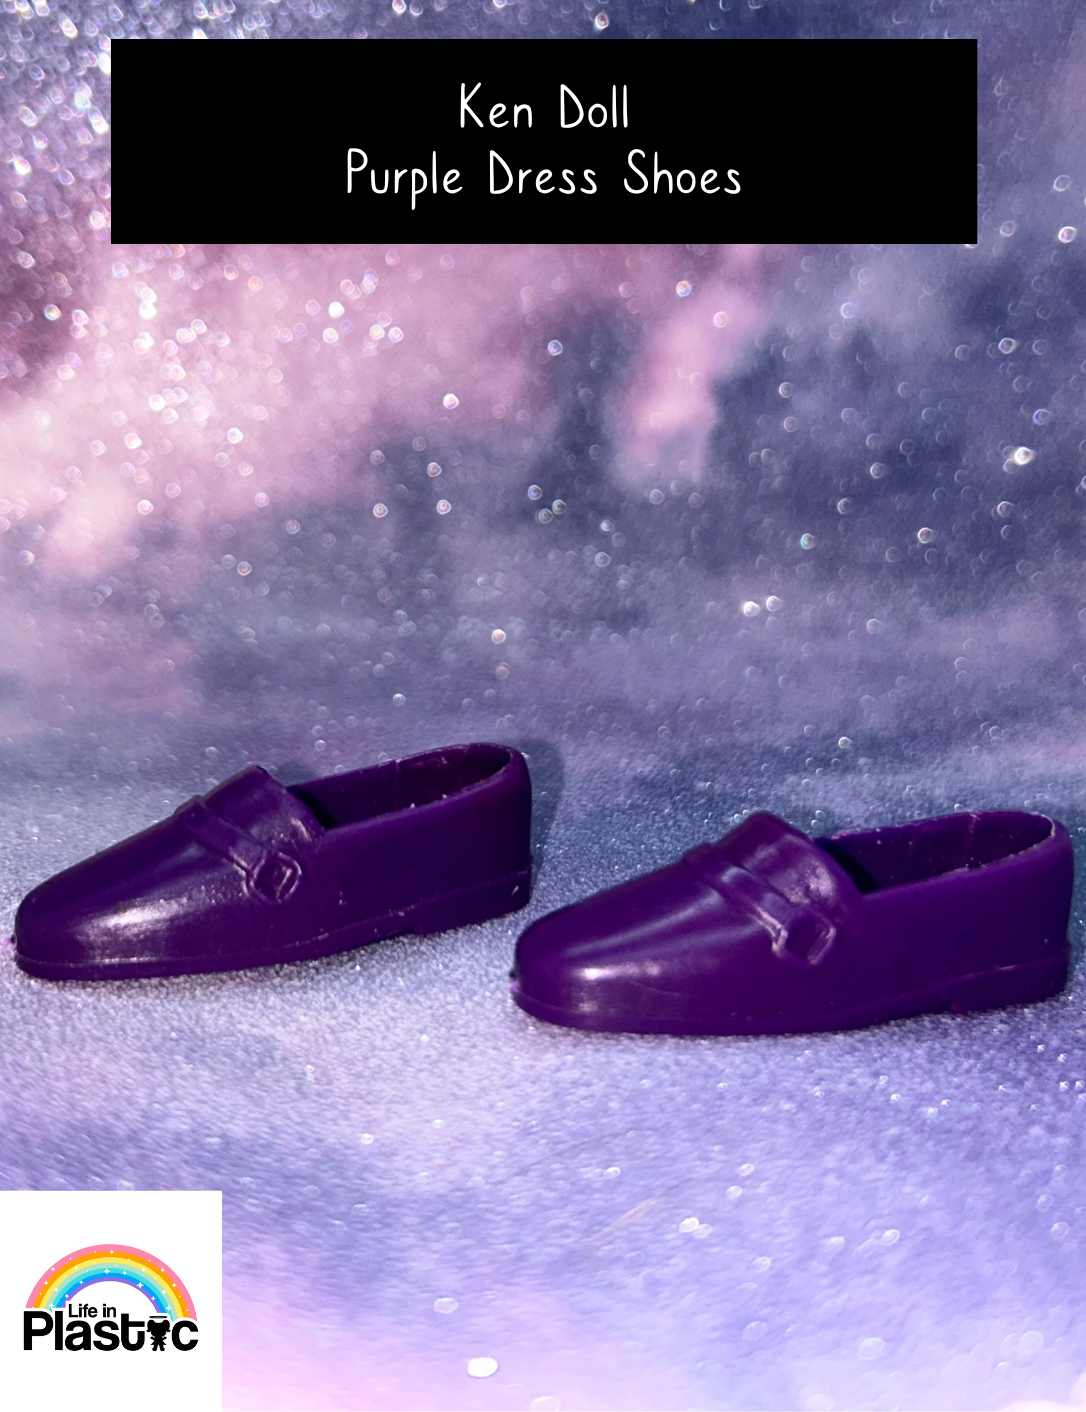 Ken Doll Purple Dress Shoes